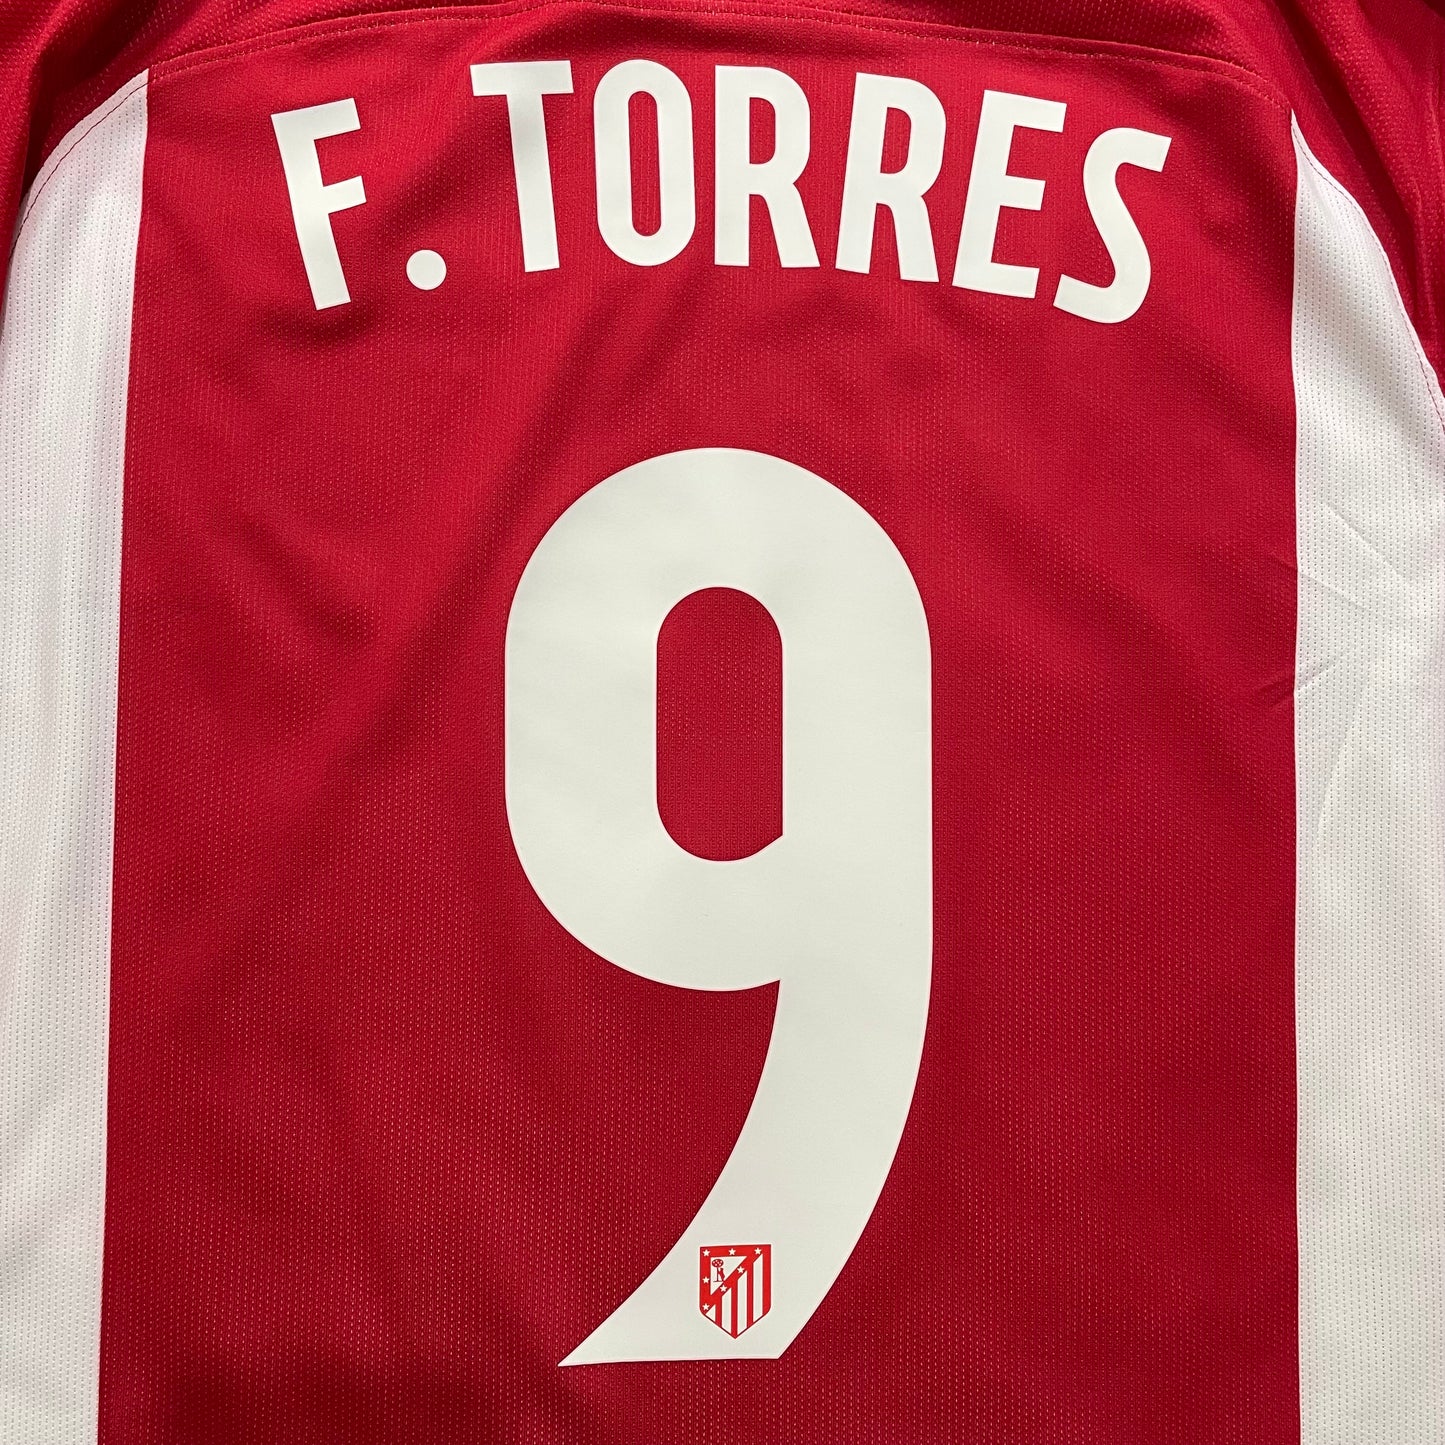 2016-2017 Atlético de Madrid Match Issue Champions League home shirt #9 Torres (L)